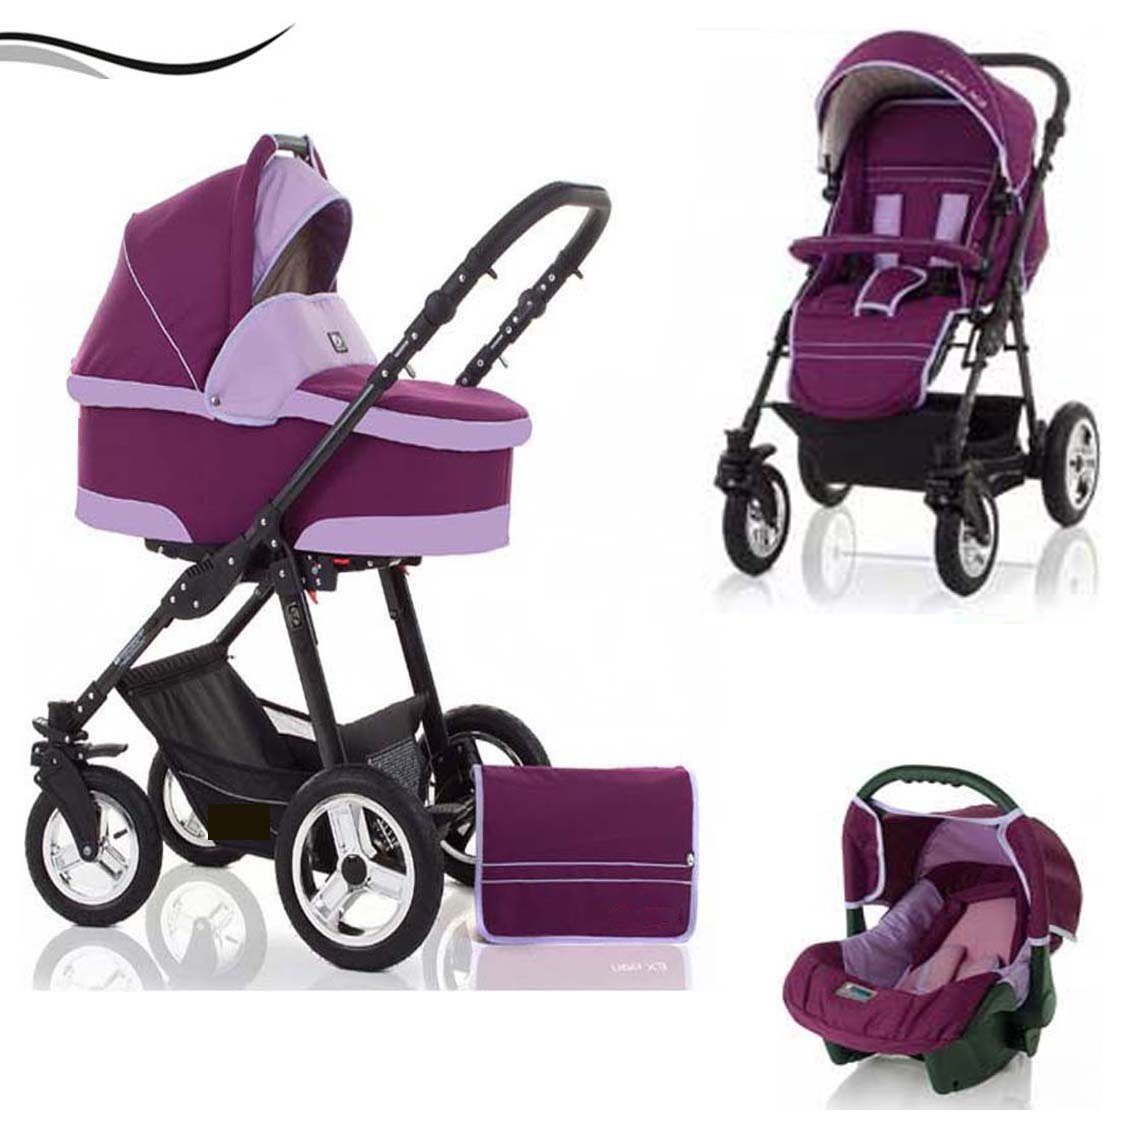 babies-on-wheels Kombi-Kinderwagen City Star 3 in 1 inkl. Autositz - 16 Teile - von Geburt bis 4 Jahre in 16 Farben Bordeaux-Flieder